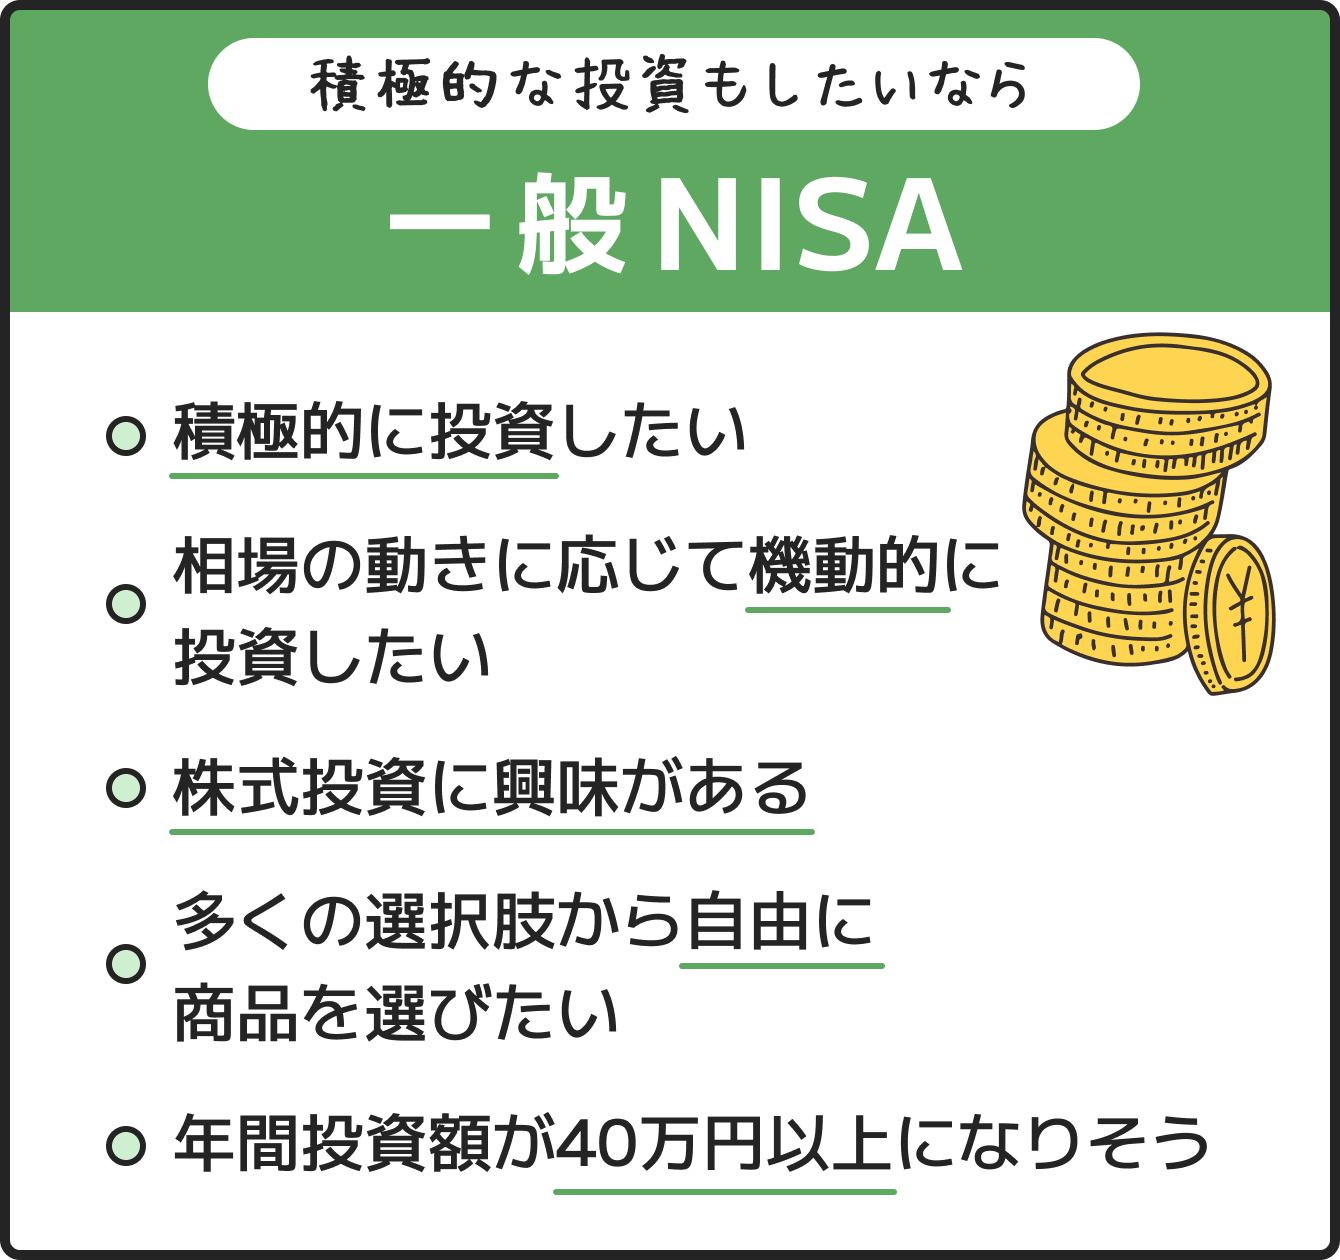 積極的な投資もしたいなら 一般NISA